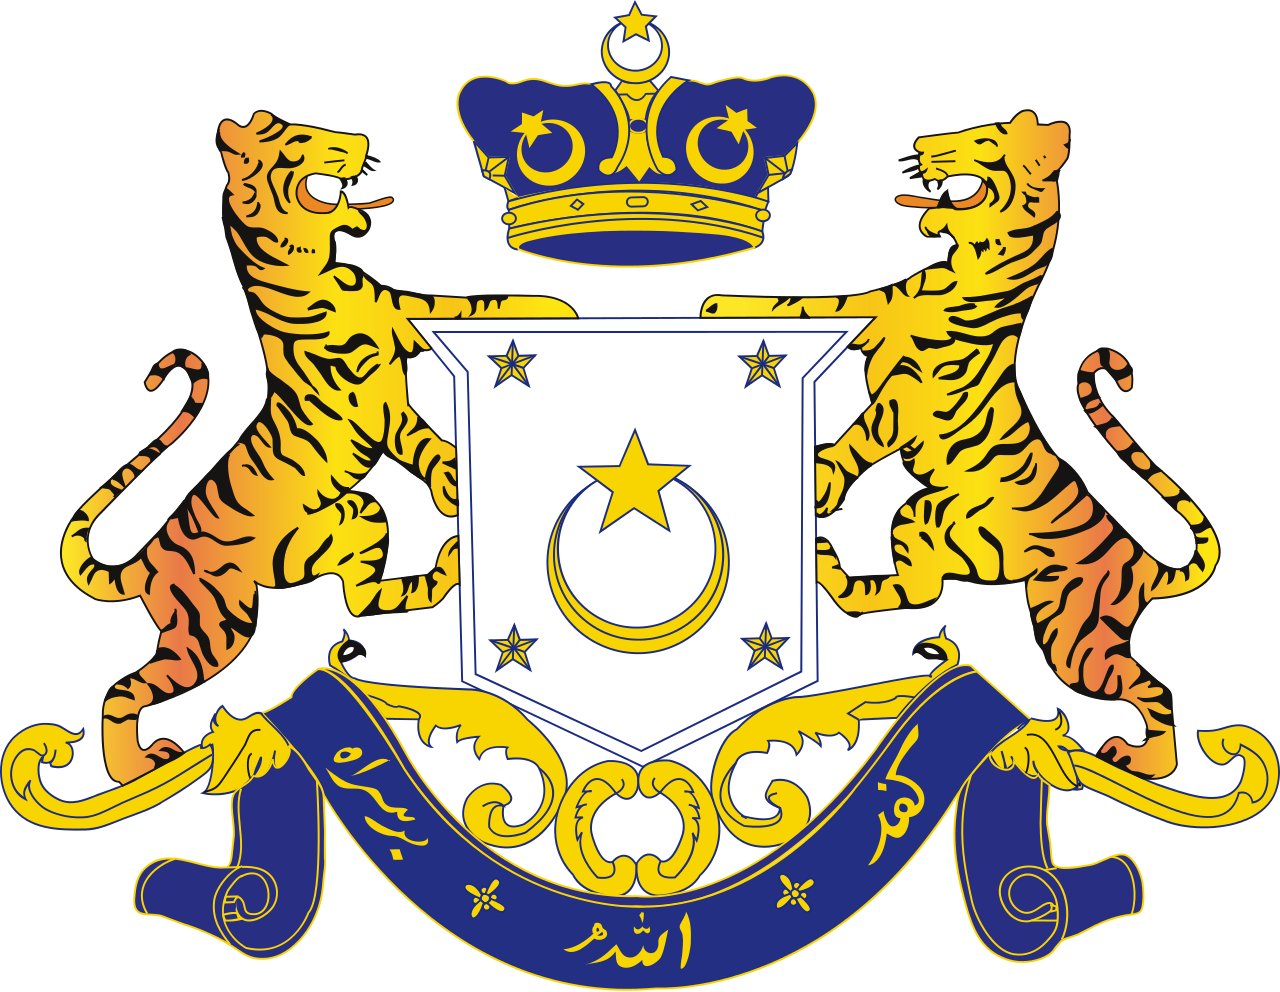 Jawatan Kosong di Pejabat Menteri Besar Johor - 21 April 2016 - JAWATAN